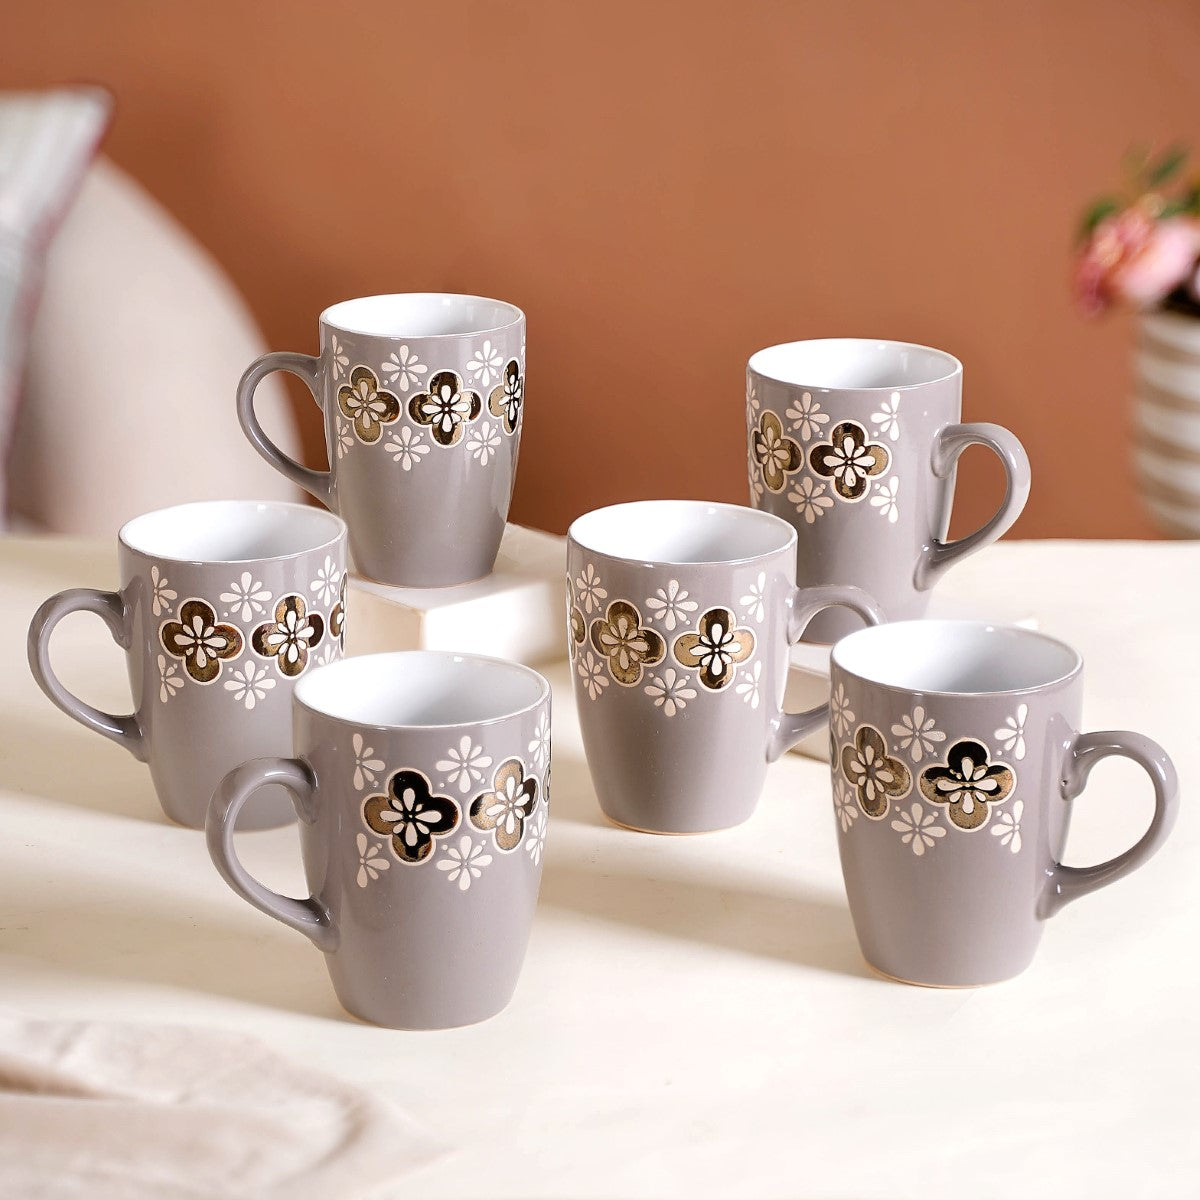 Mug Set - Buy Triangle Coffee Mug Set of 6 Online in India | Nestasia